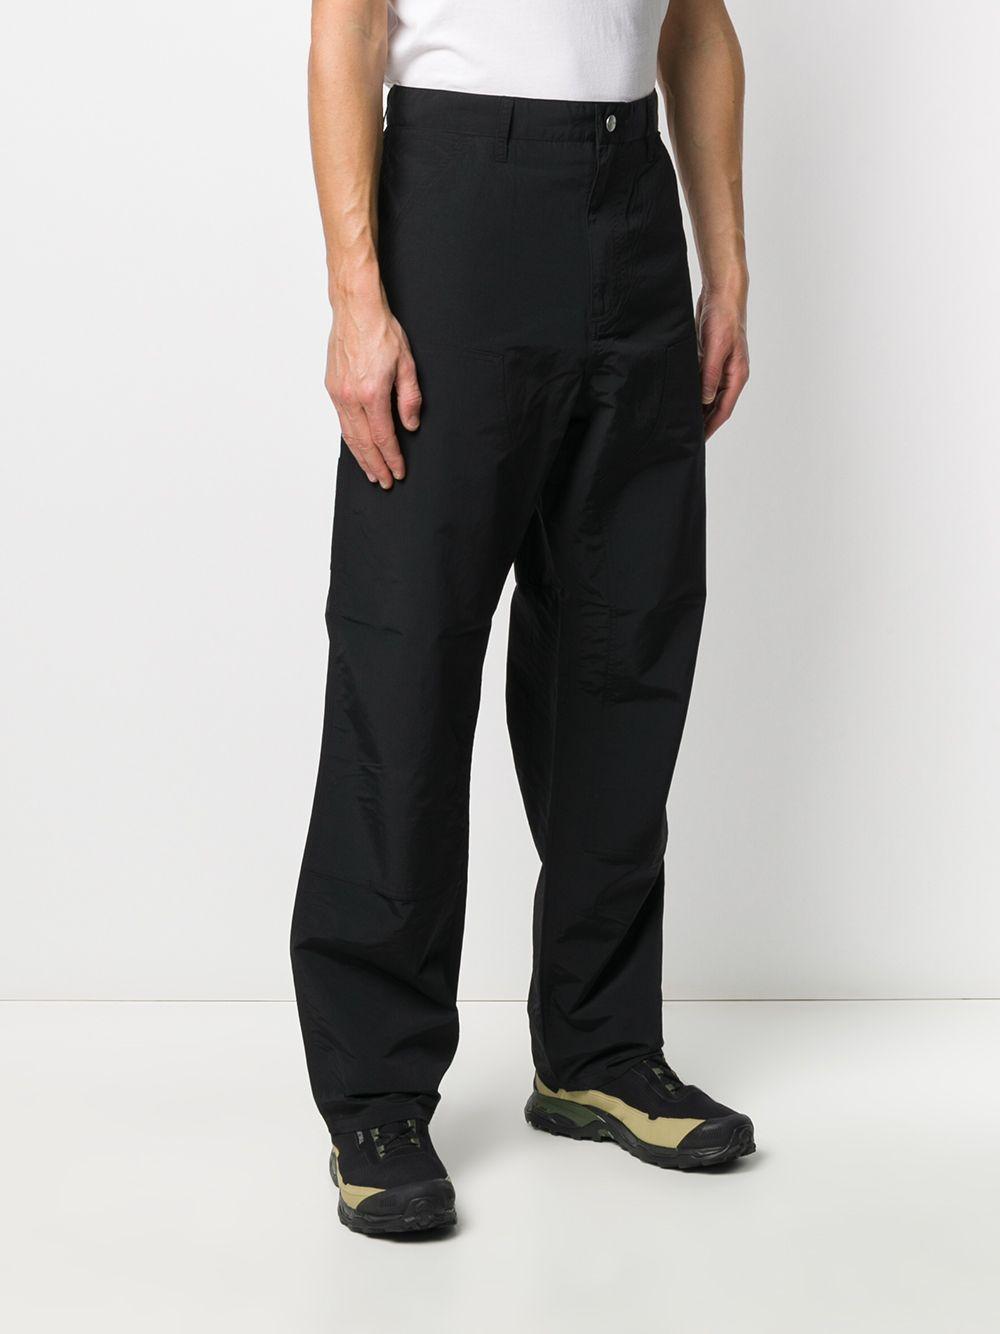 Carhartt WIP X Pop Trading Co Wide-leg Trousers in Black for Men - Lyst